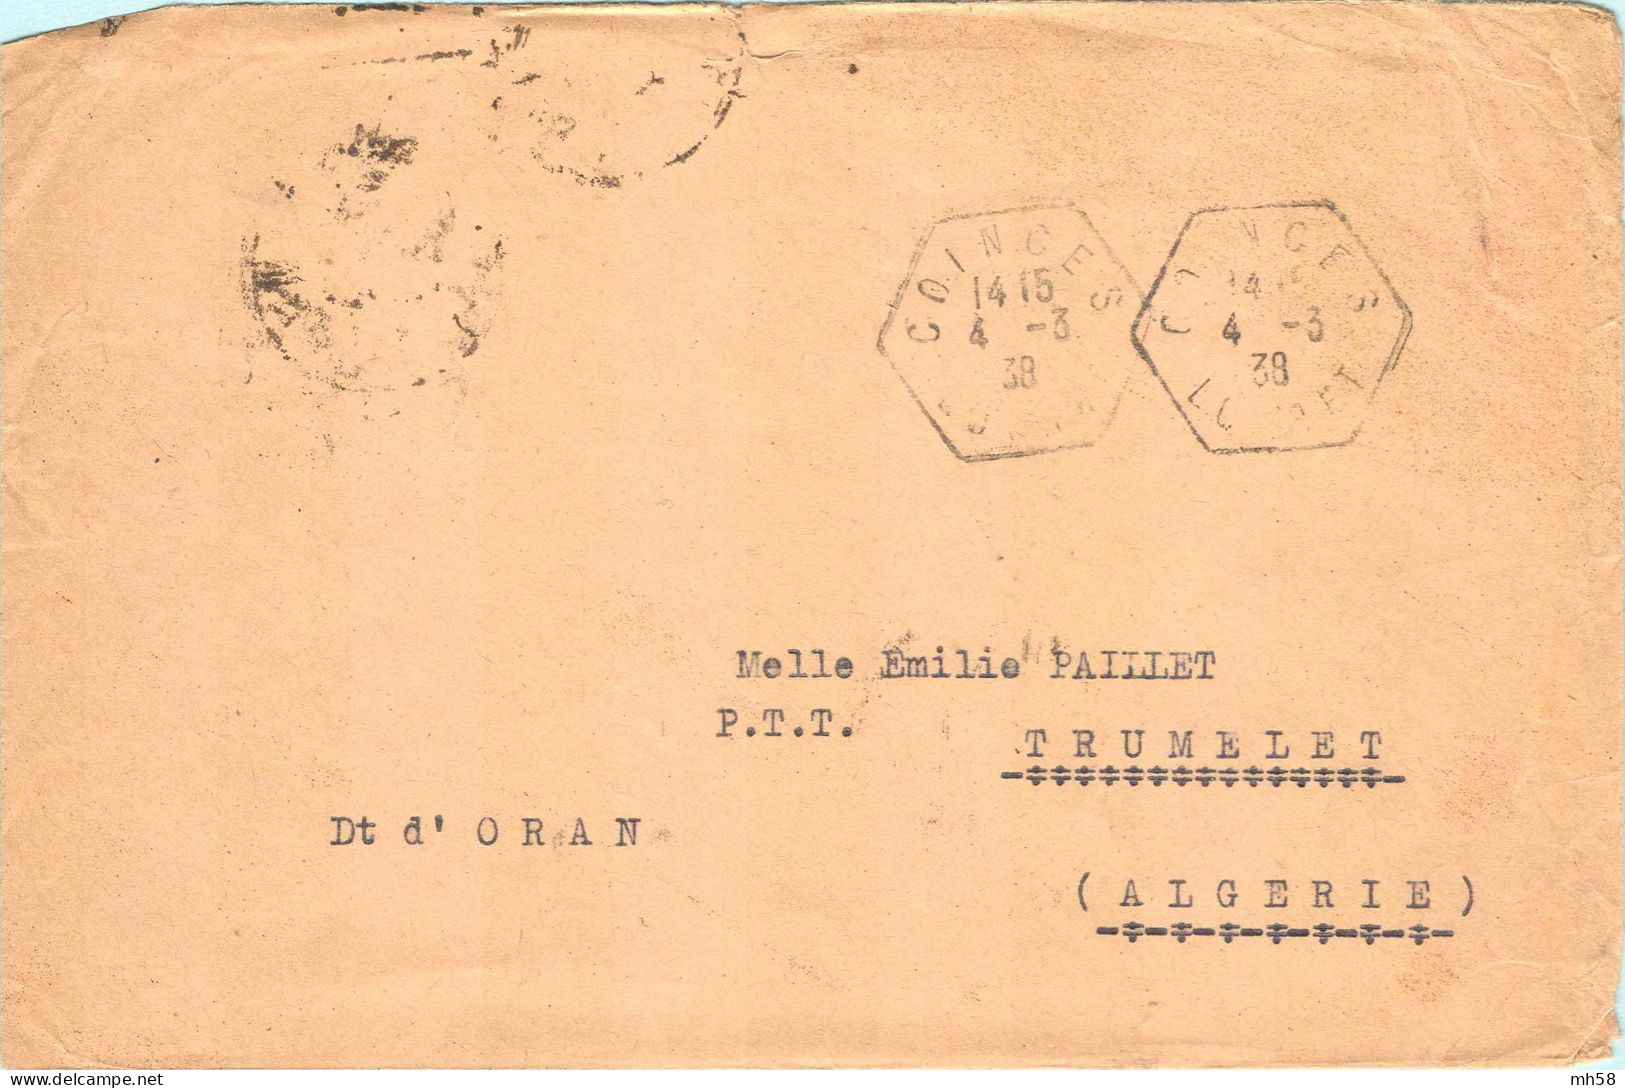 FRANCE - Lettre Vers Algérie Avec Pub De Carnet : Poste Aérienne - N° 365 65c Paix Outremer Type II - Storia Postale